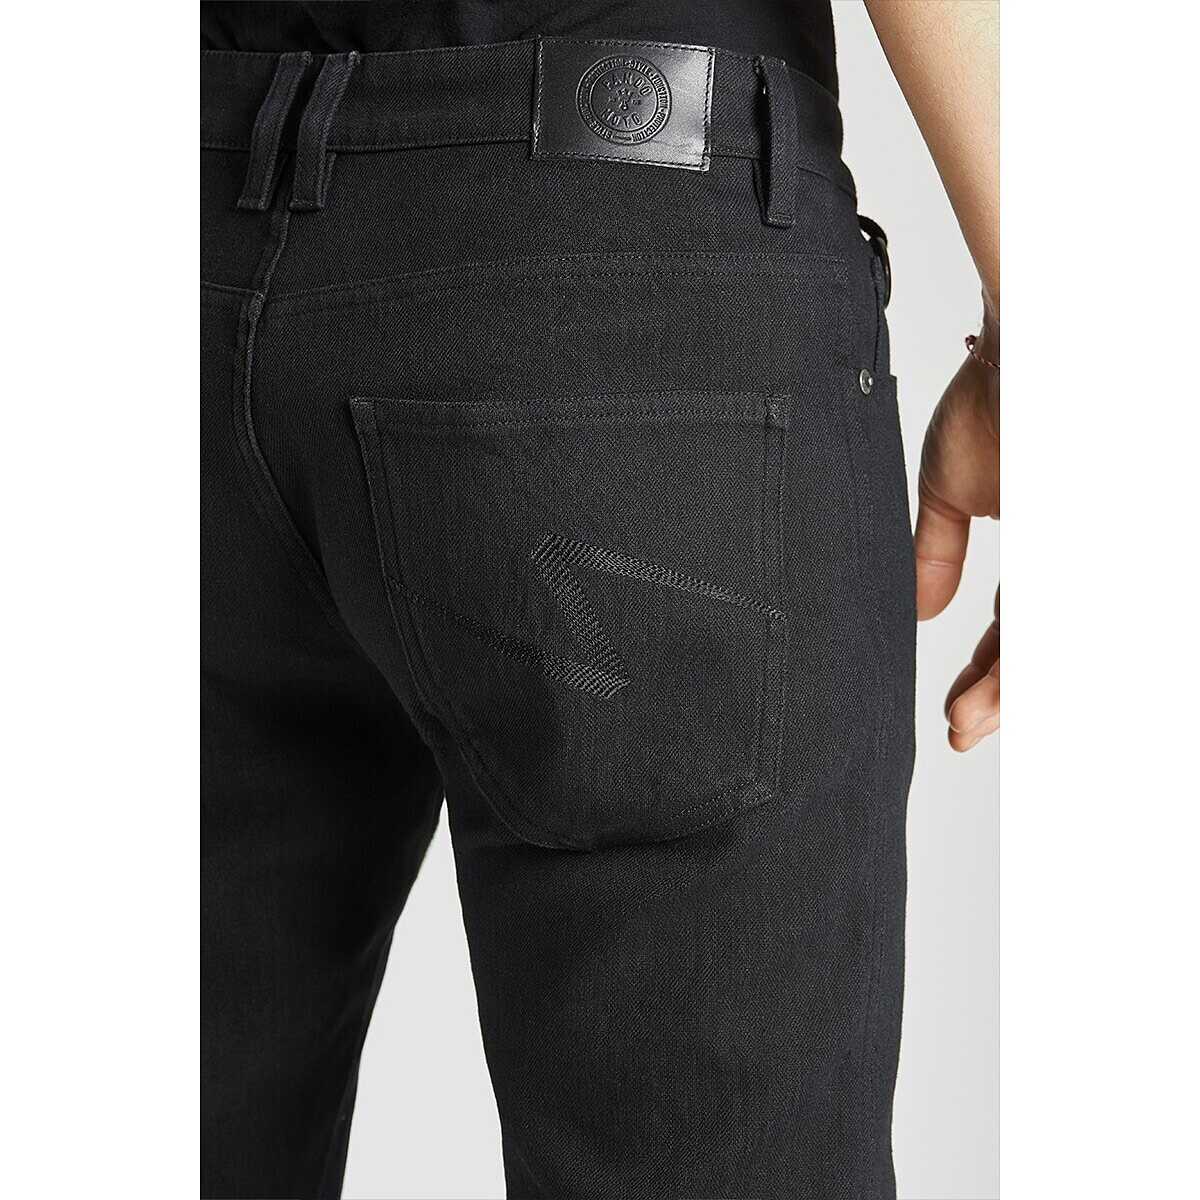 Pantalon moto pour homme LIZARD CARGO en textile avec protections amovibles